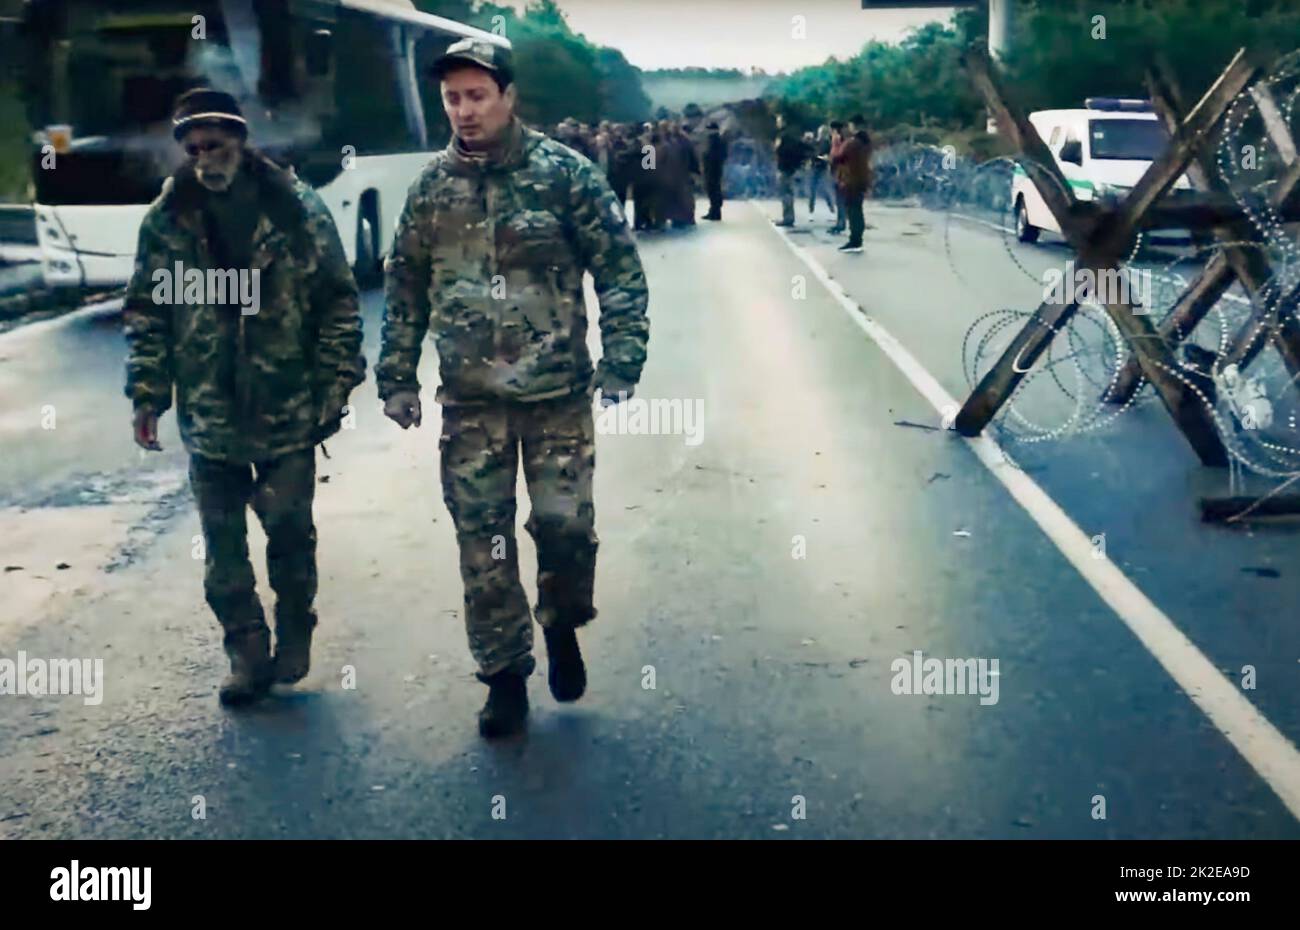 Capturas de pantalla del video del Ejército de Ucrania sobre el intercambio negociado de prisioneros entre Ucrania y Rusia. Las fotos muestran que los soldados ucranianos repatriados entran en su país de origen y son recibidos por el ejército y los equipos médicos de Ucrania. Crédito fotográfico: SBU Foto de stock